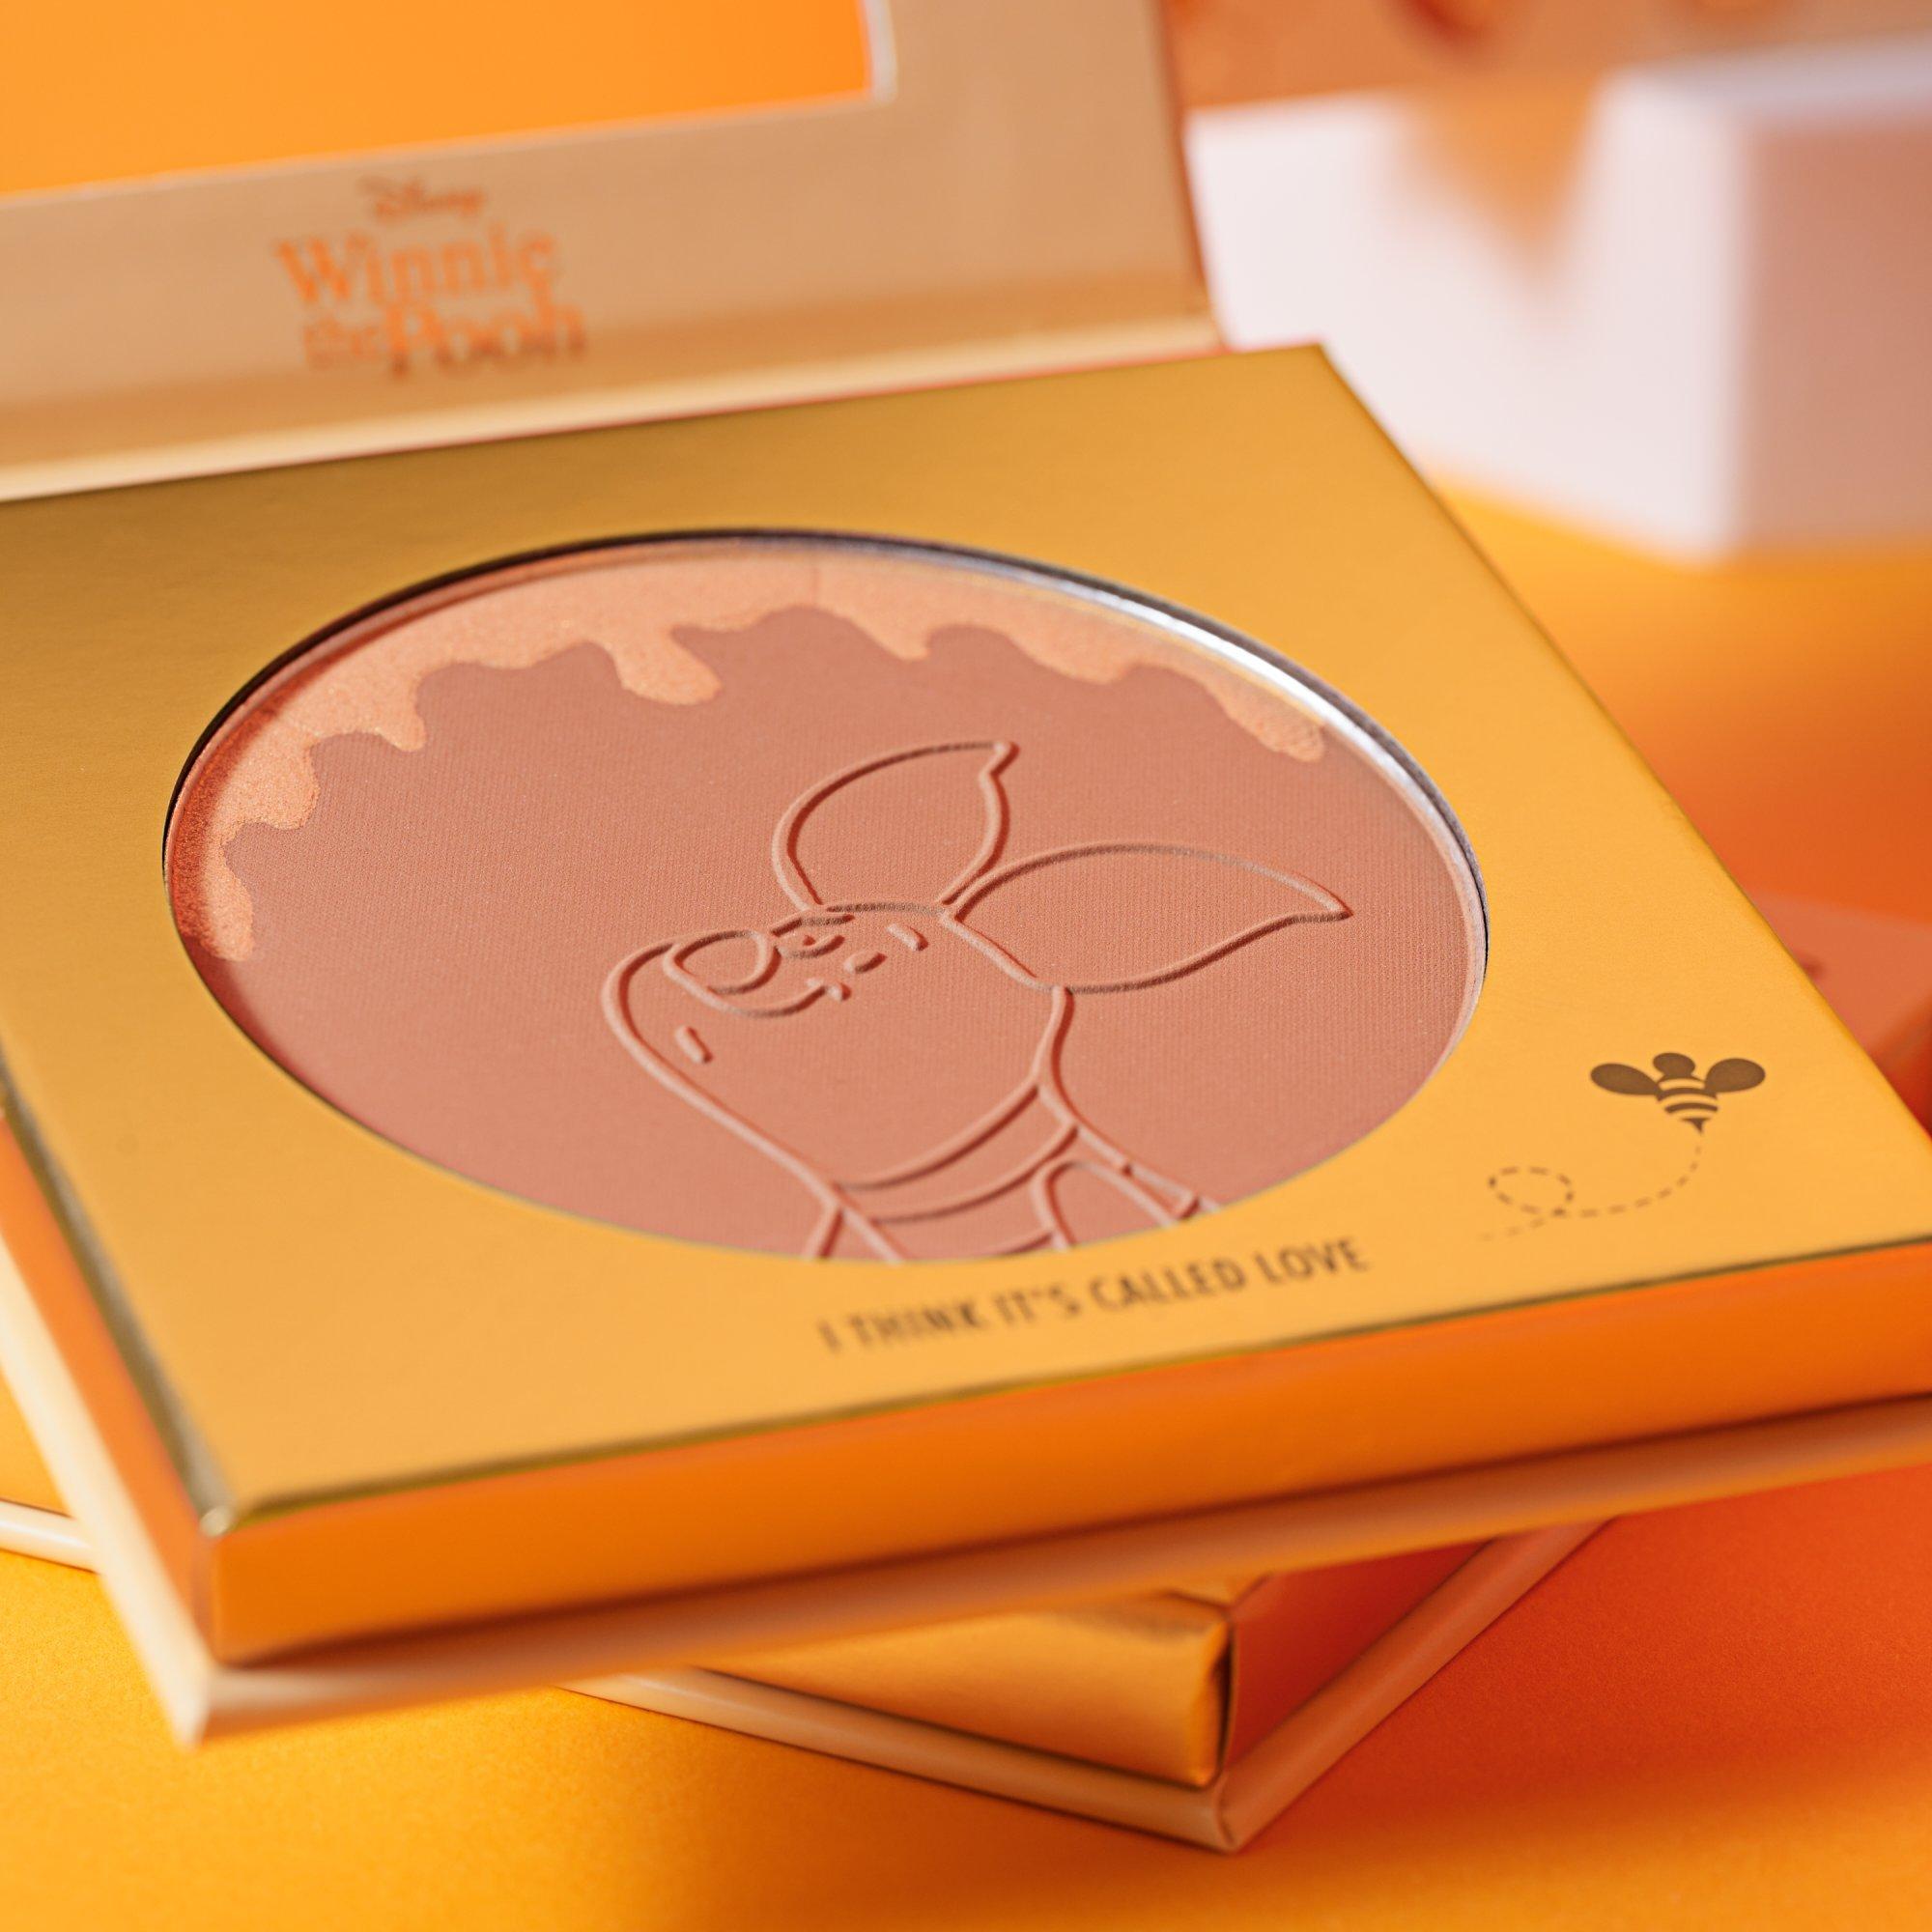 Disney Winnie the Pooh Soft Glow Bronzer